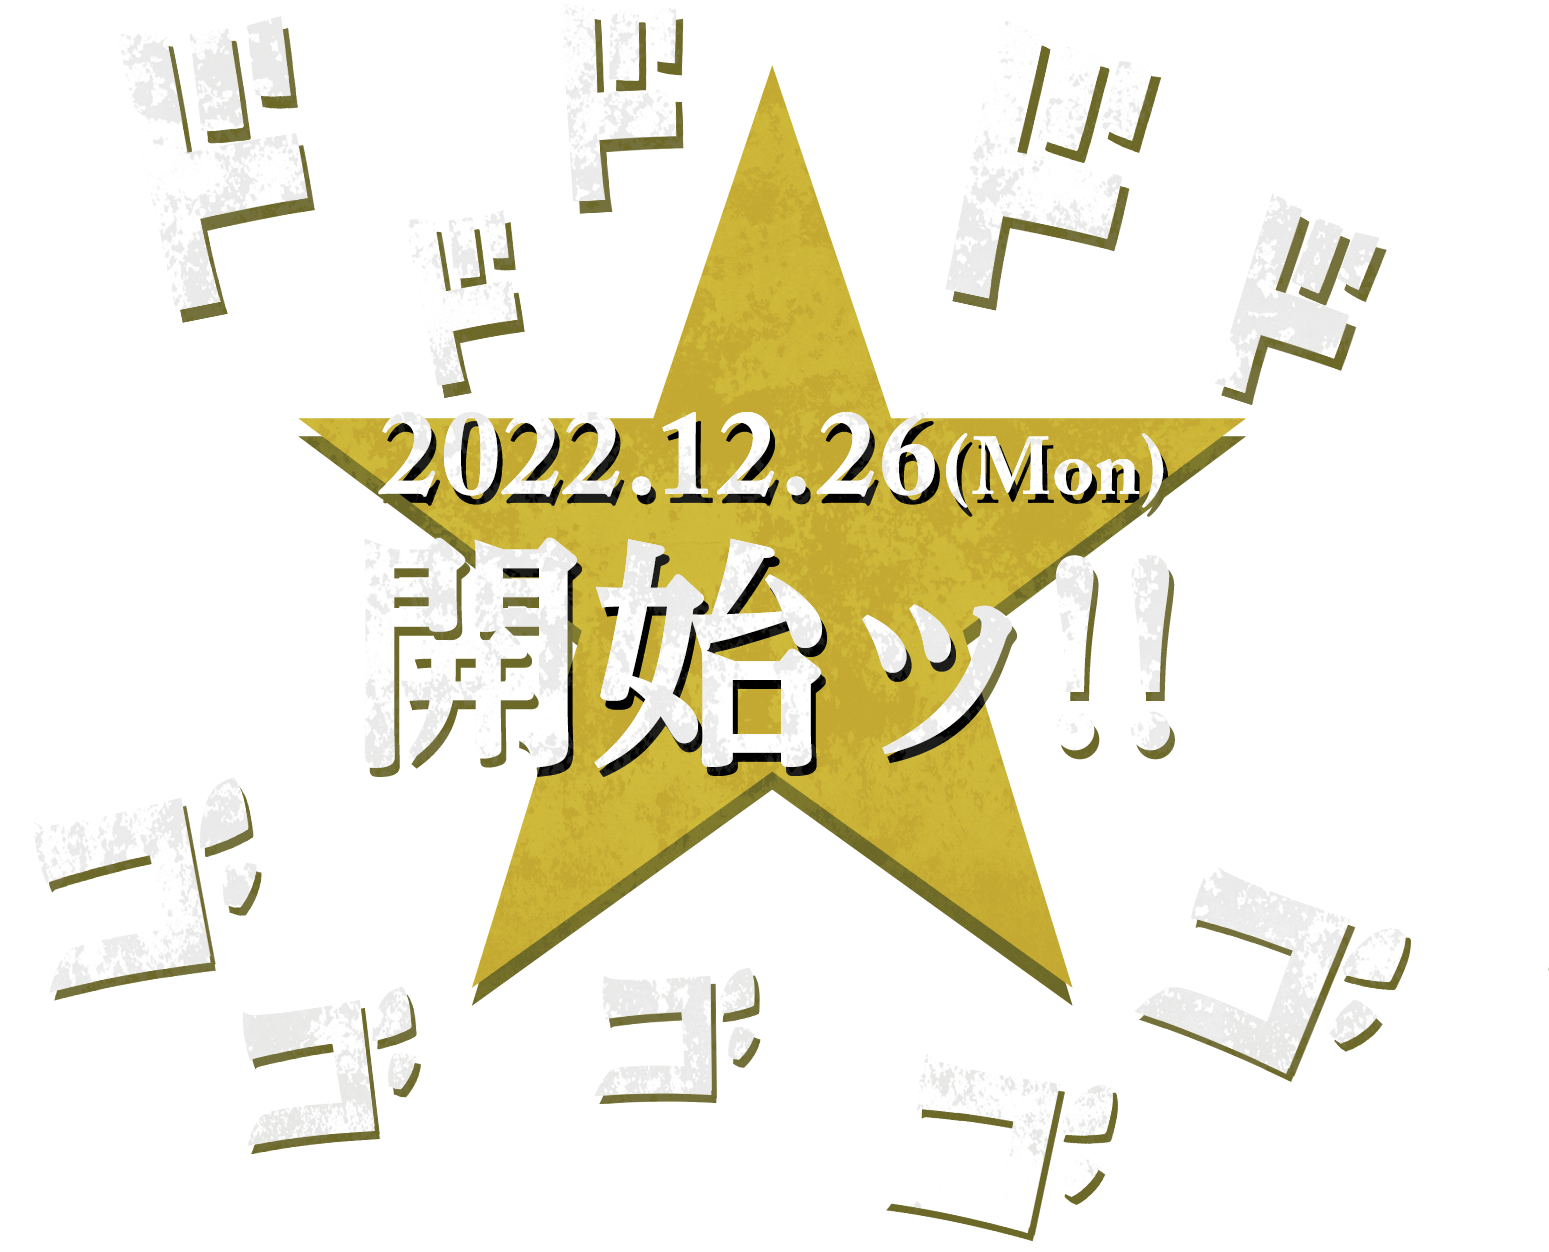 2022.12.26(Mon)開始ッ!!